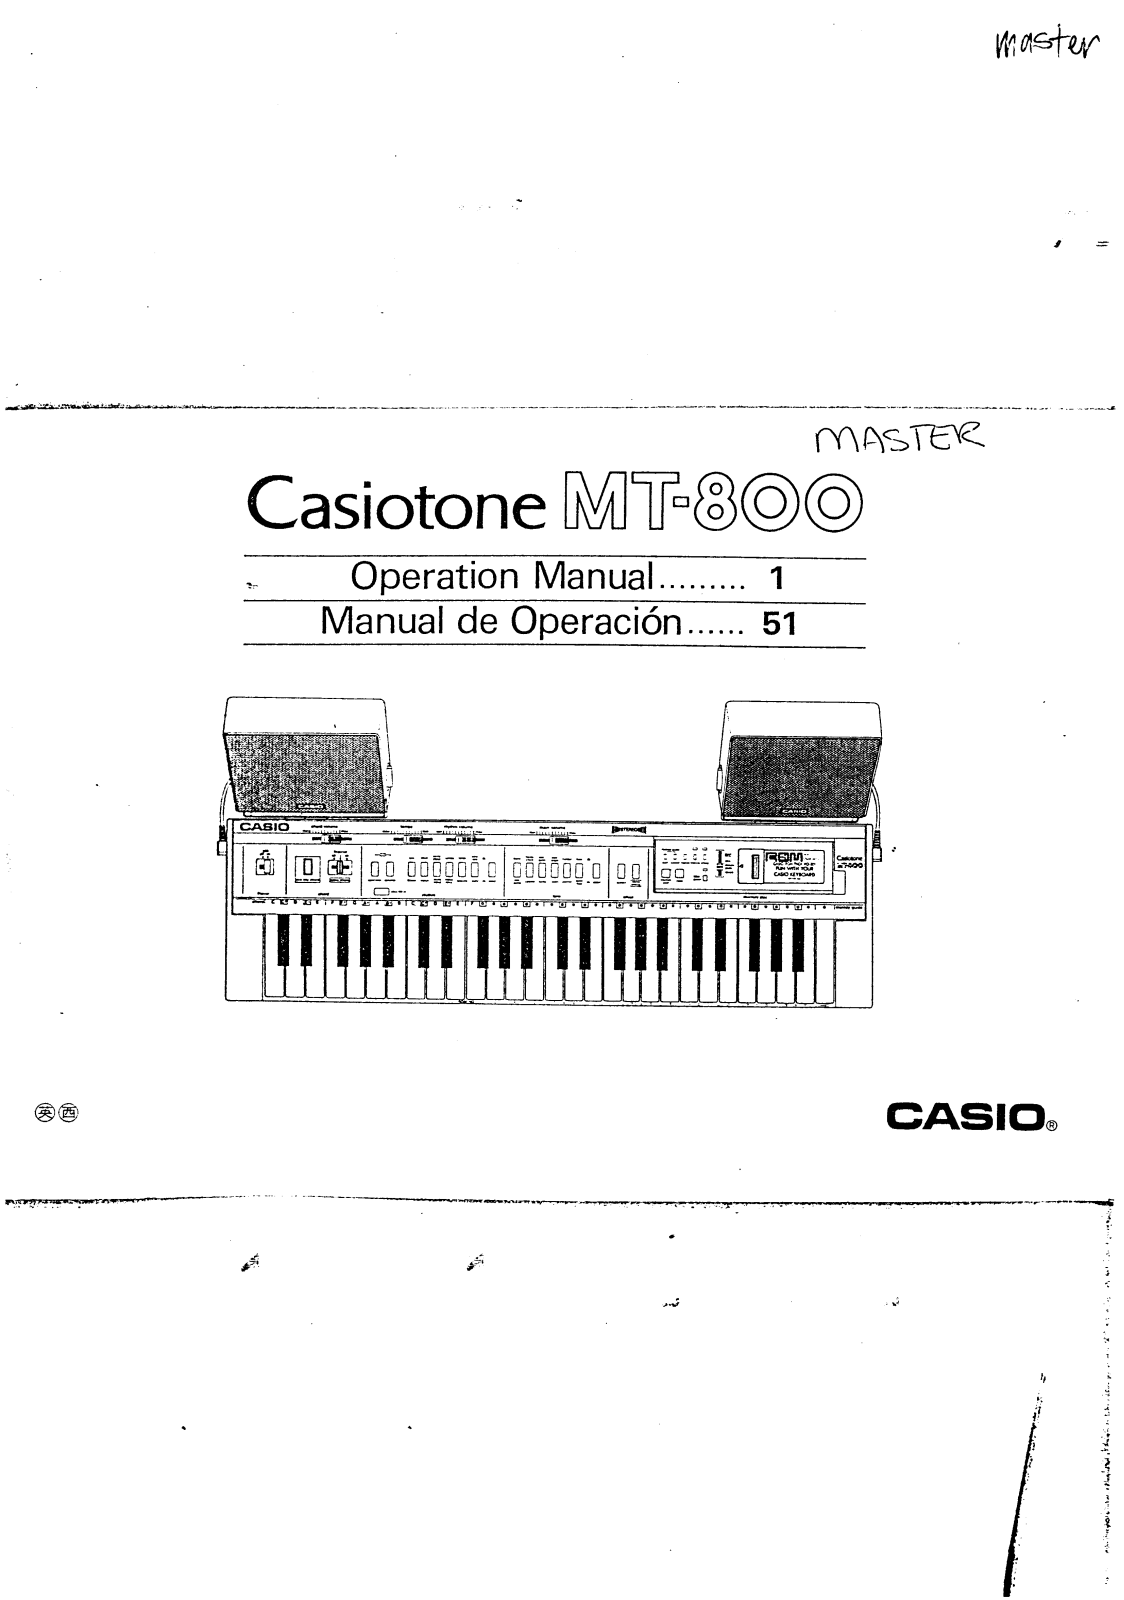 Casio MT-800 User Manual